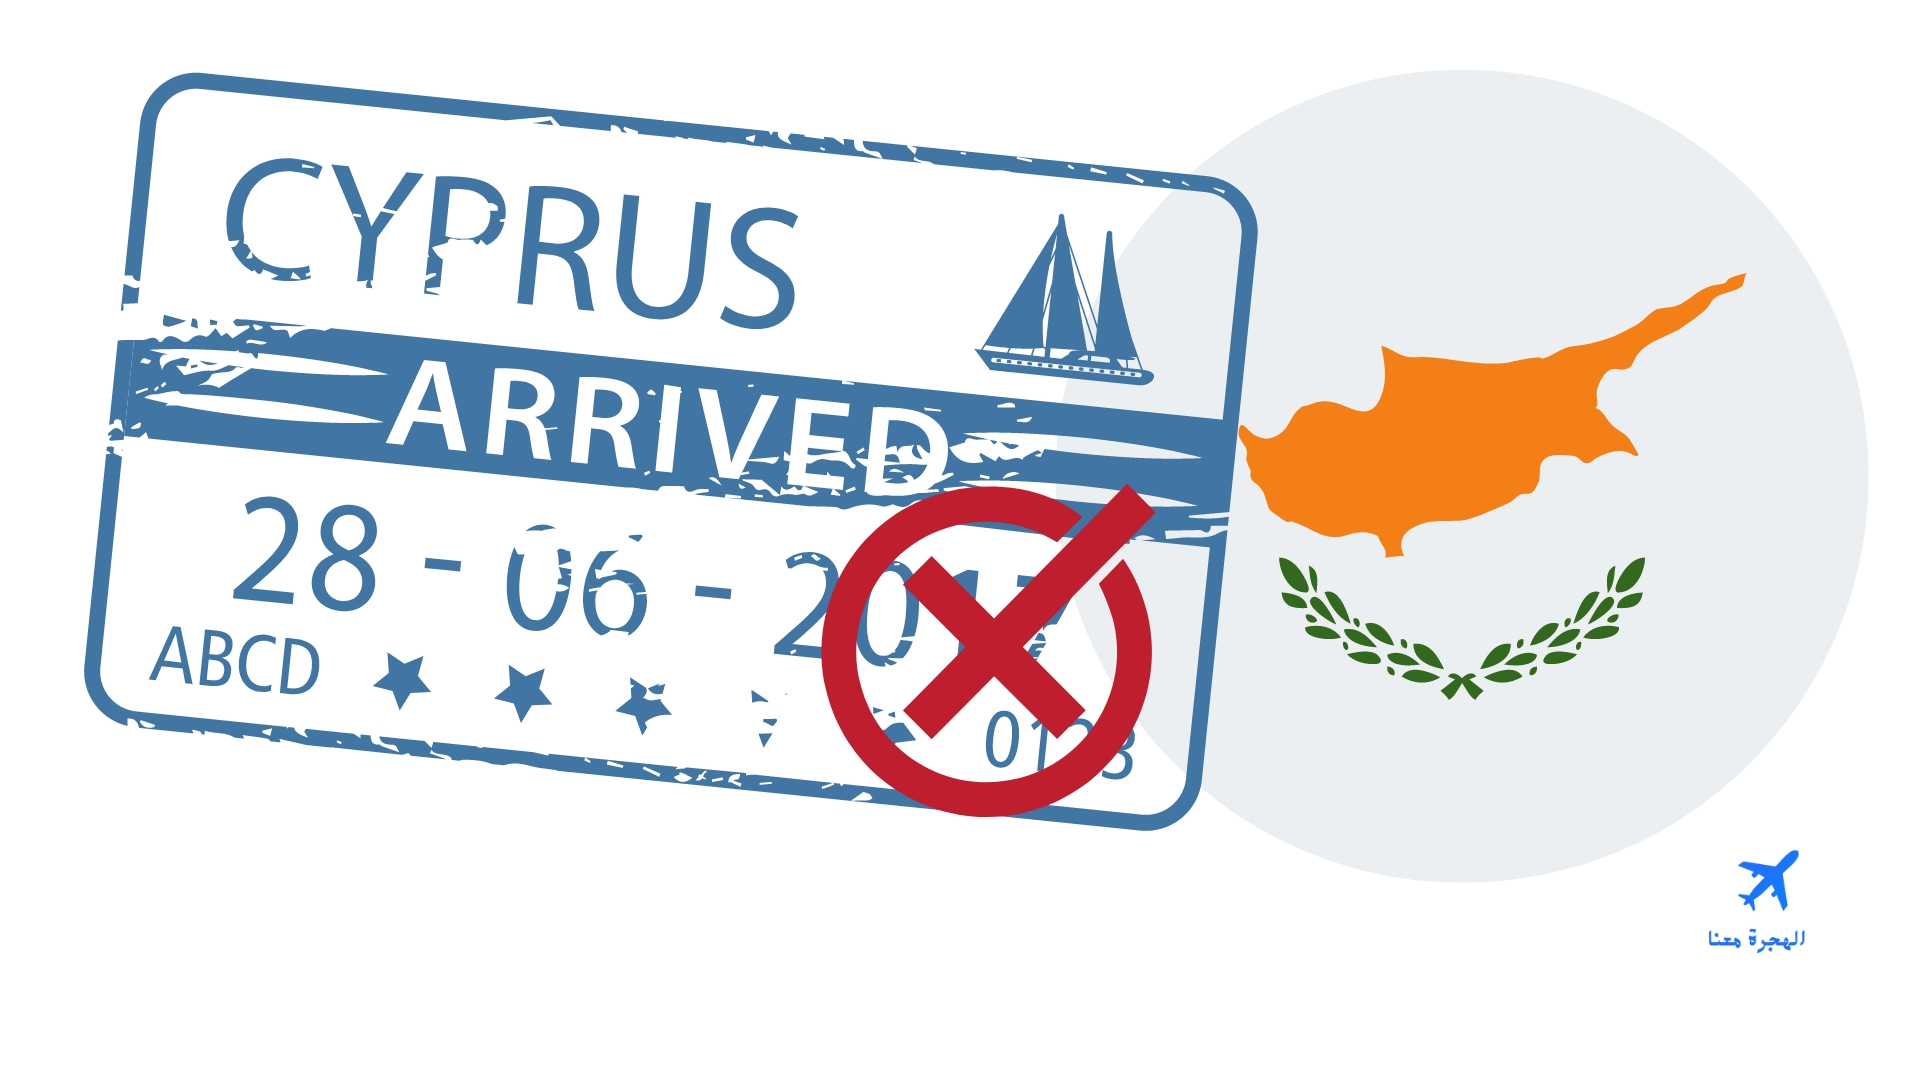 اسباب رفض تاشيرة قبرص